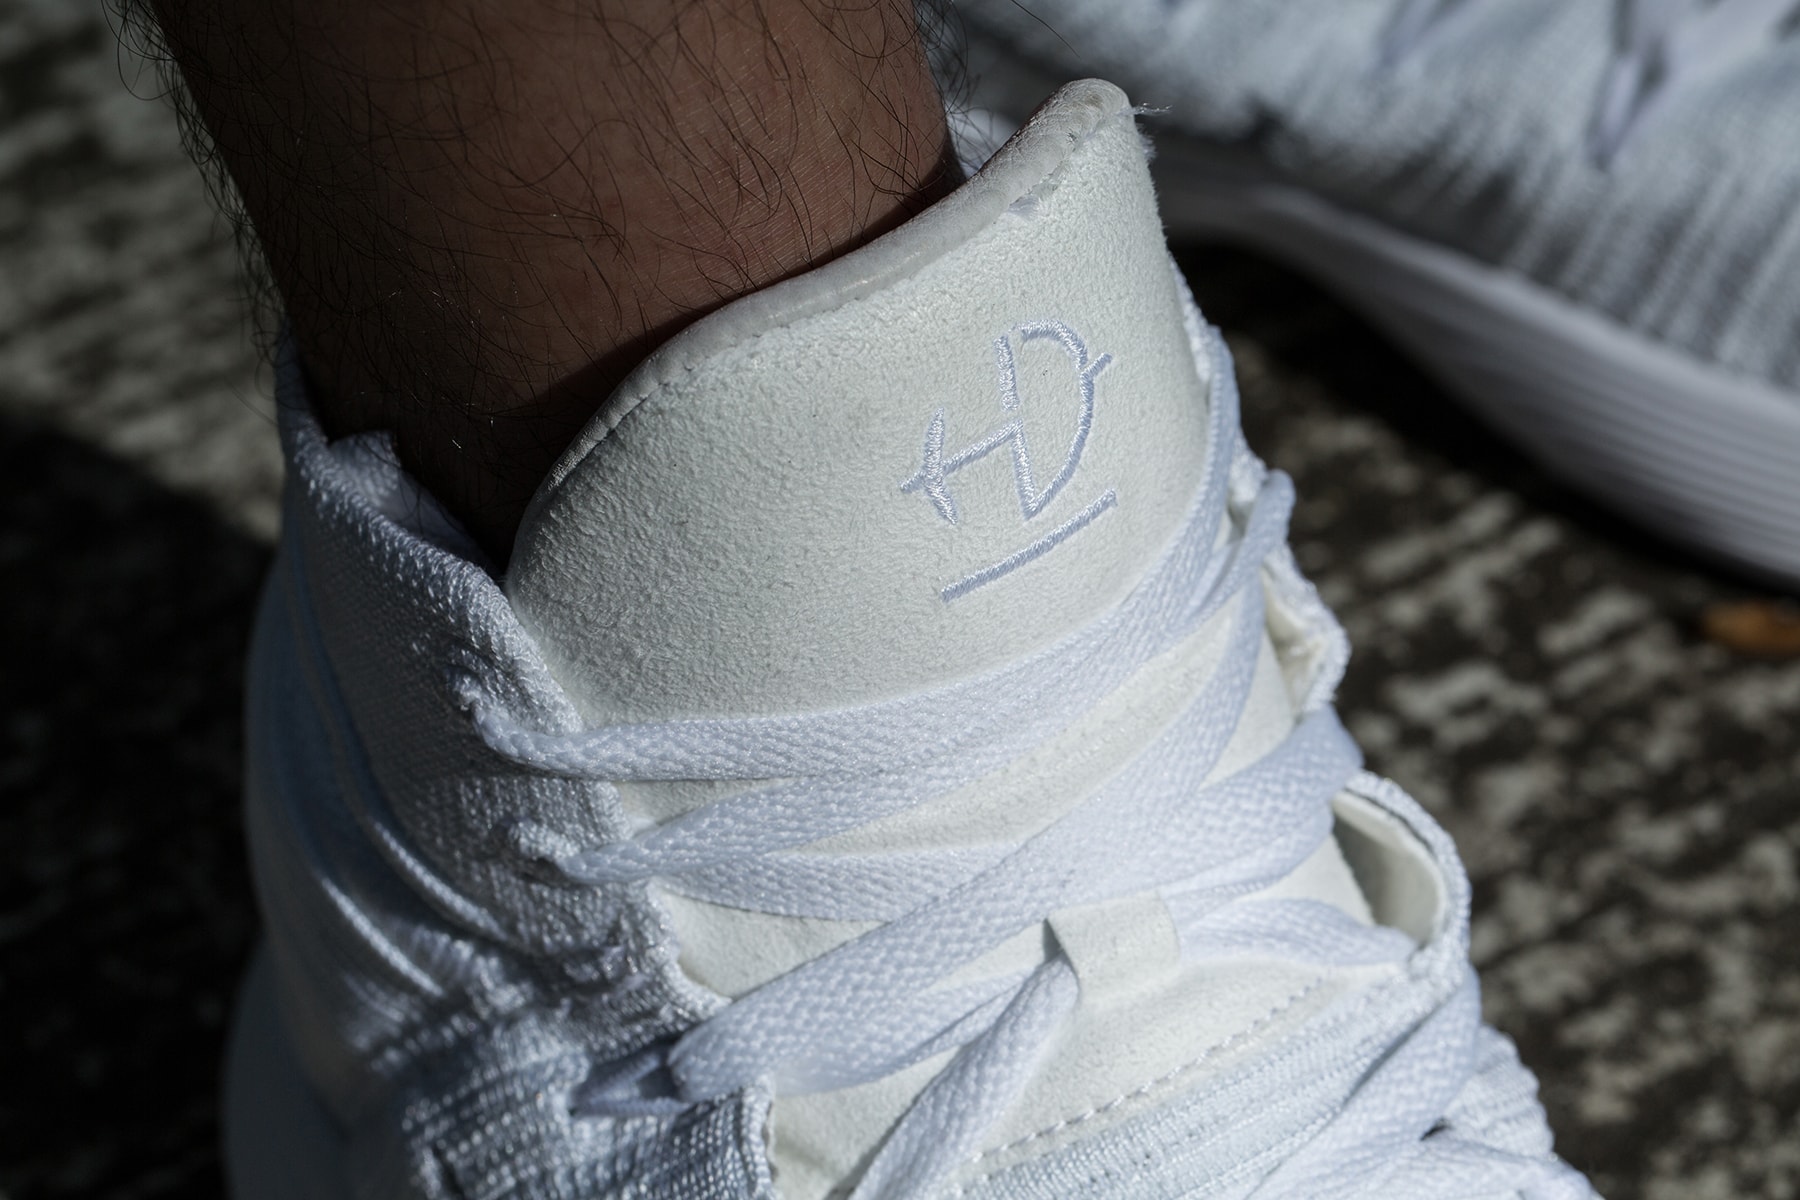 近賞 Nike 全新鞋款 React Hyperdunk 及 Jordan Super.Fly